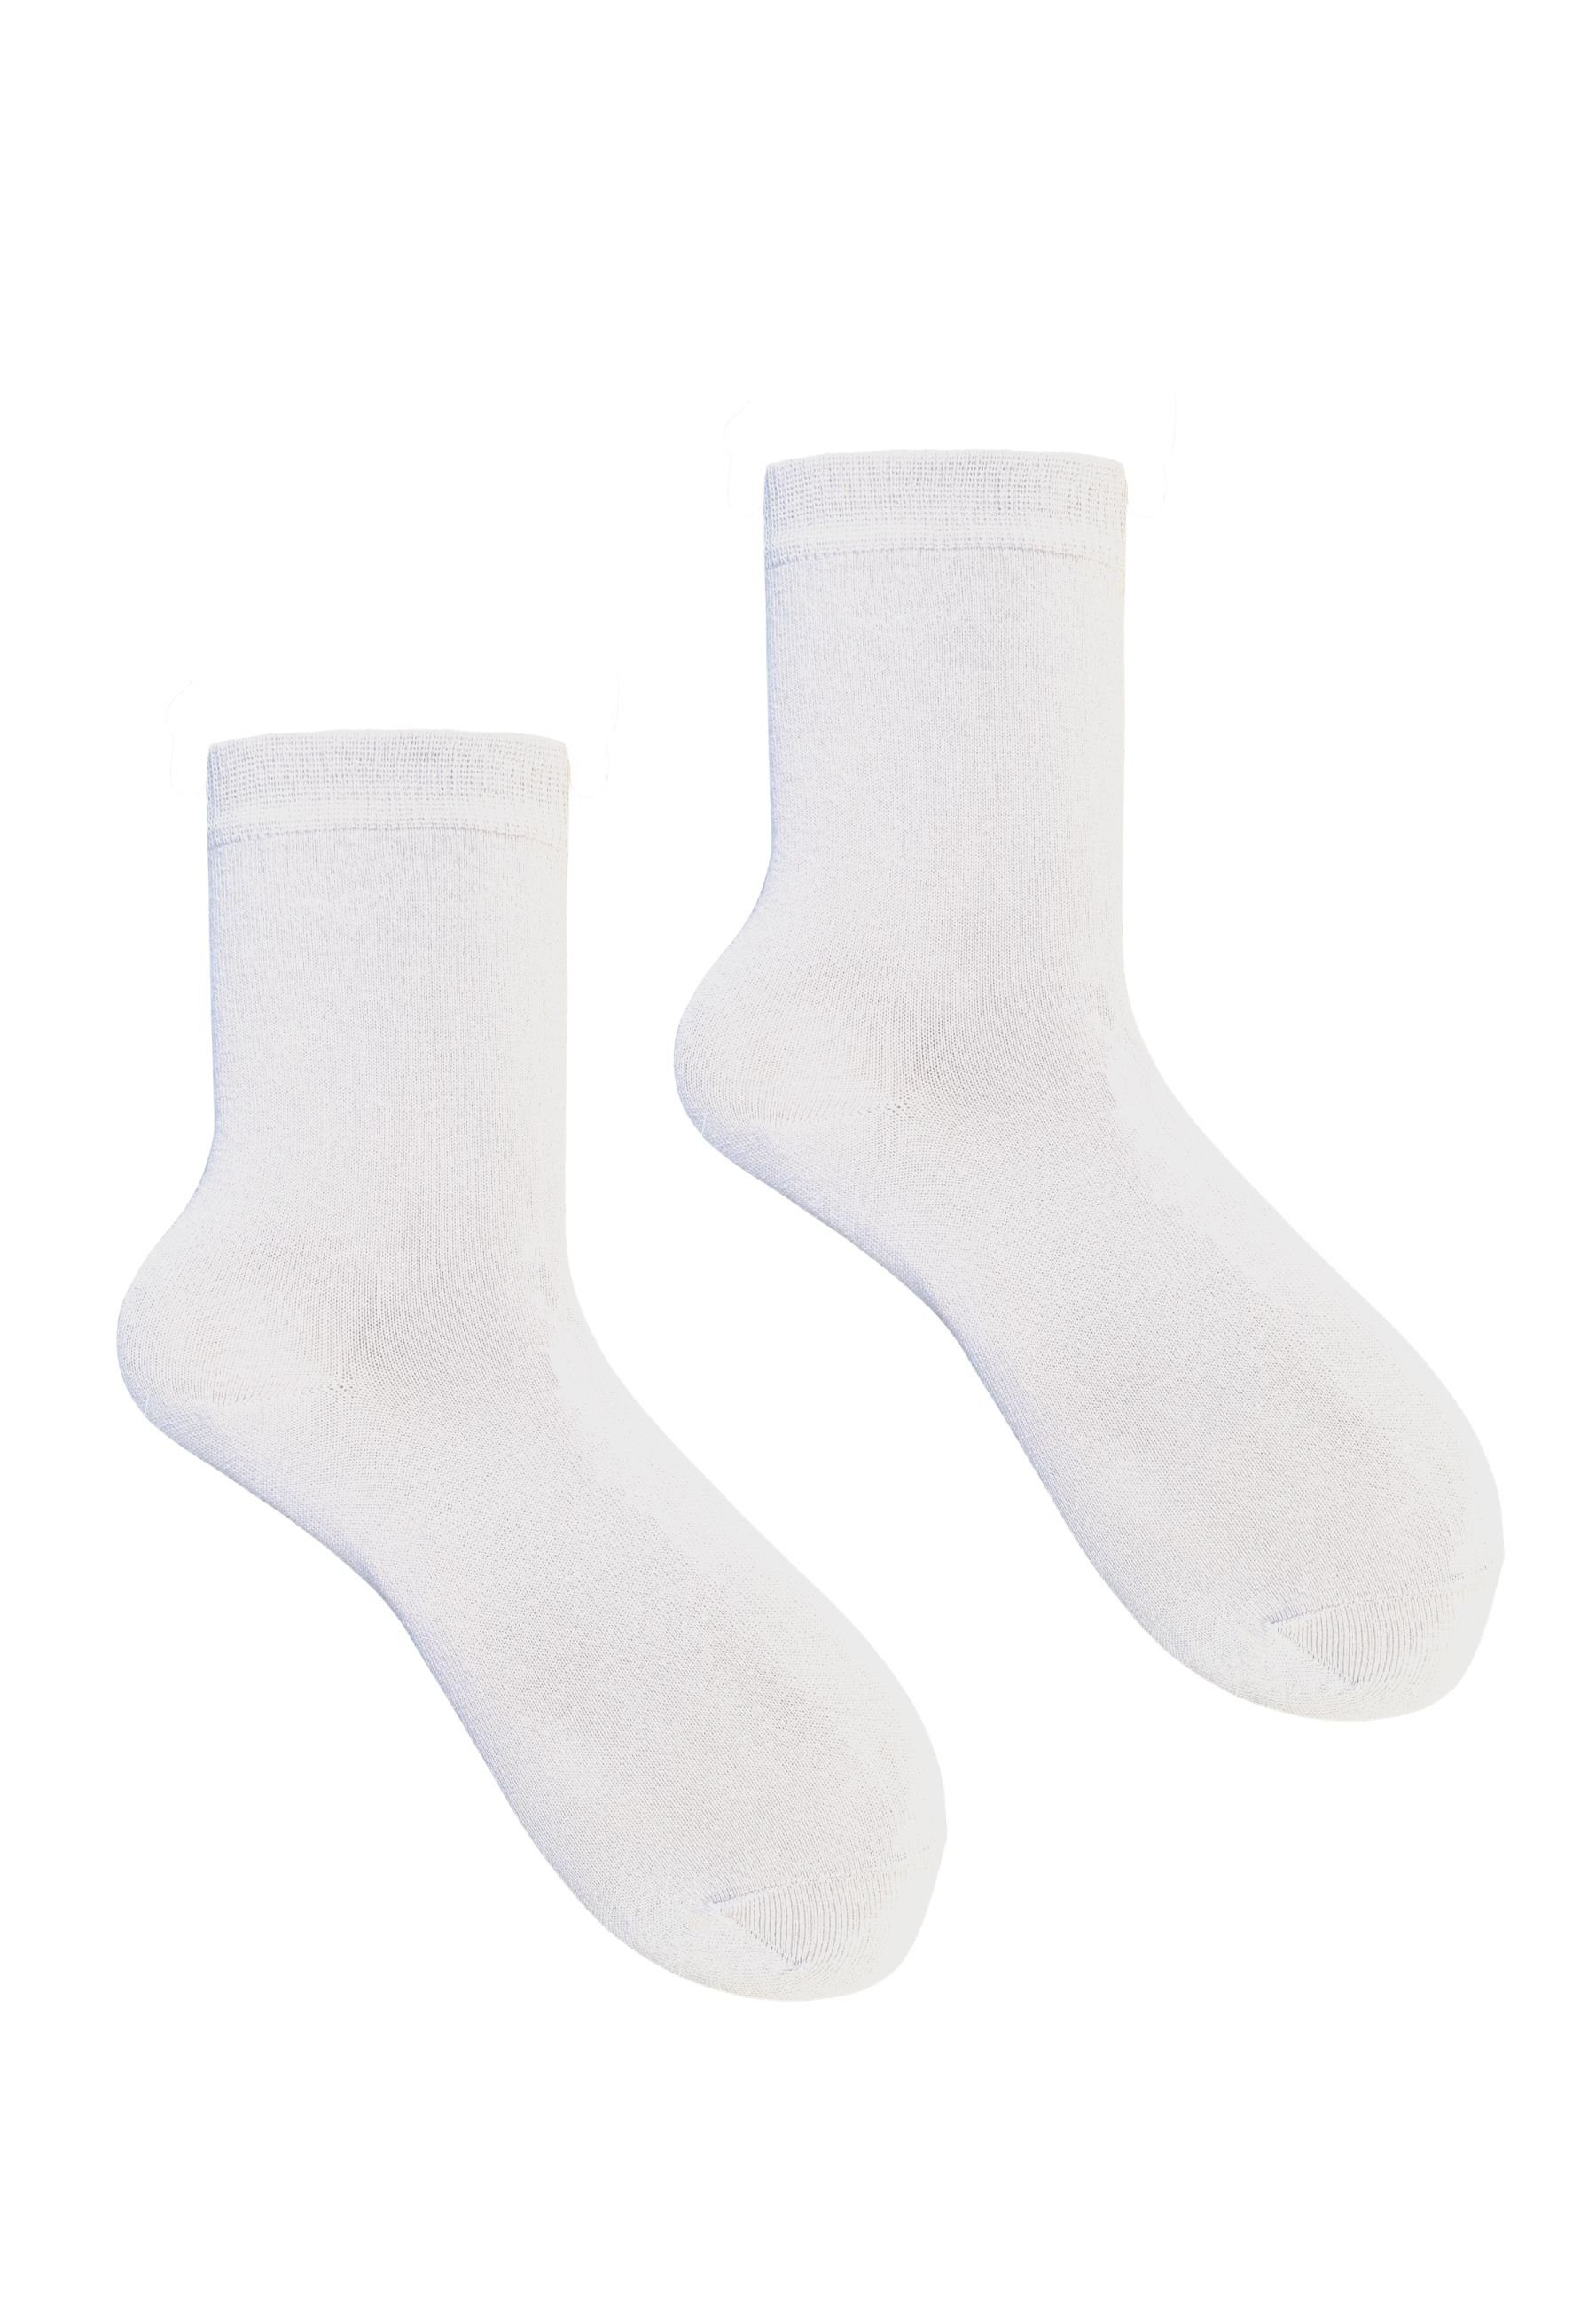 HESE Socken Weiß 5 PAAR SOCKEN BAUMWOLLE NO.12 SOX Basicsocken